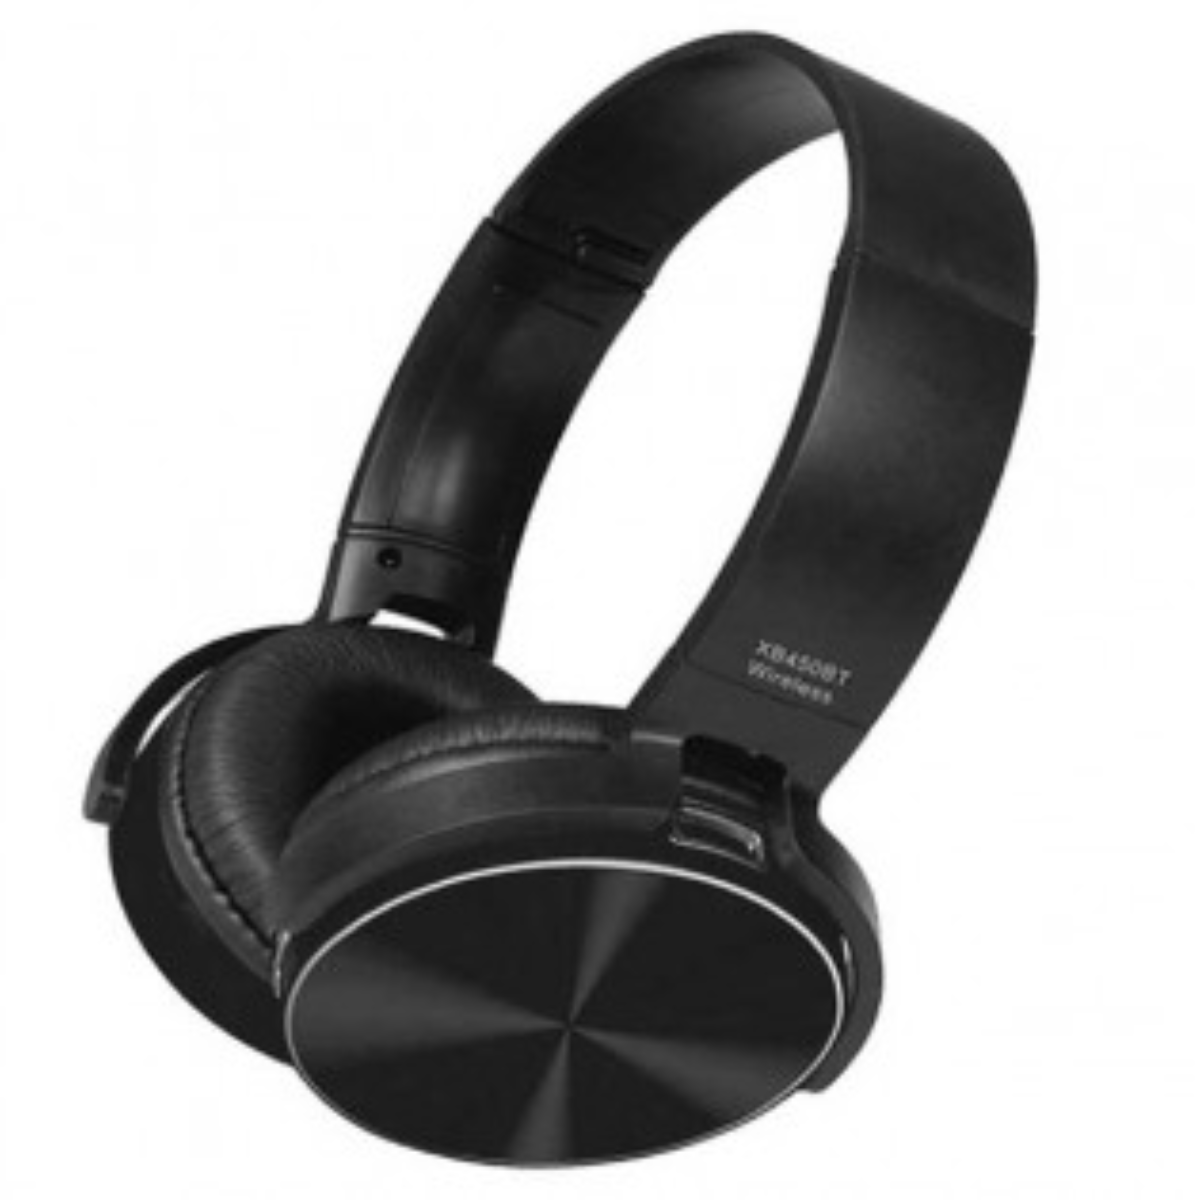 audifonos diadema sony 450bt Comprar en tienda onlineshoppingcenterg Colombia centro de compras en linea osc9